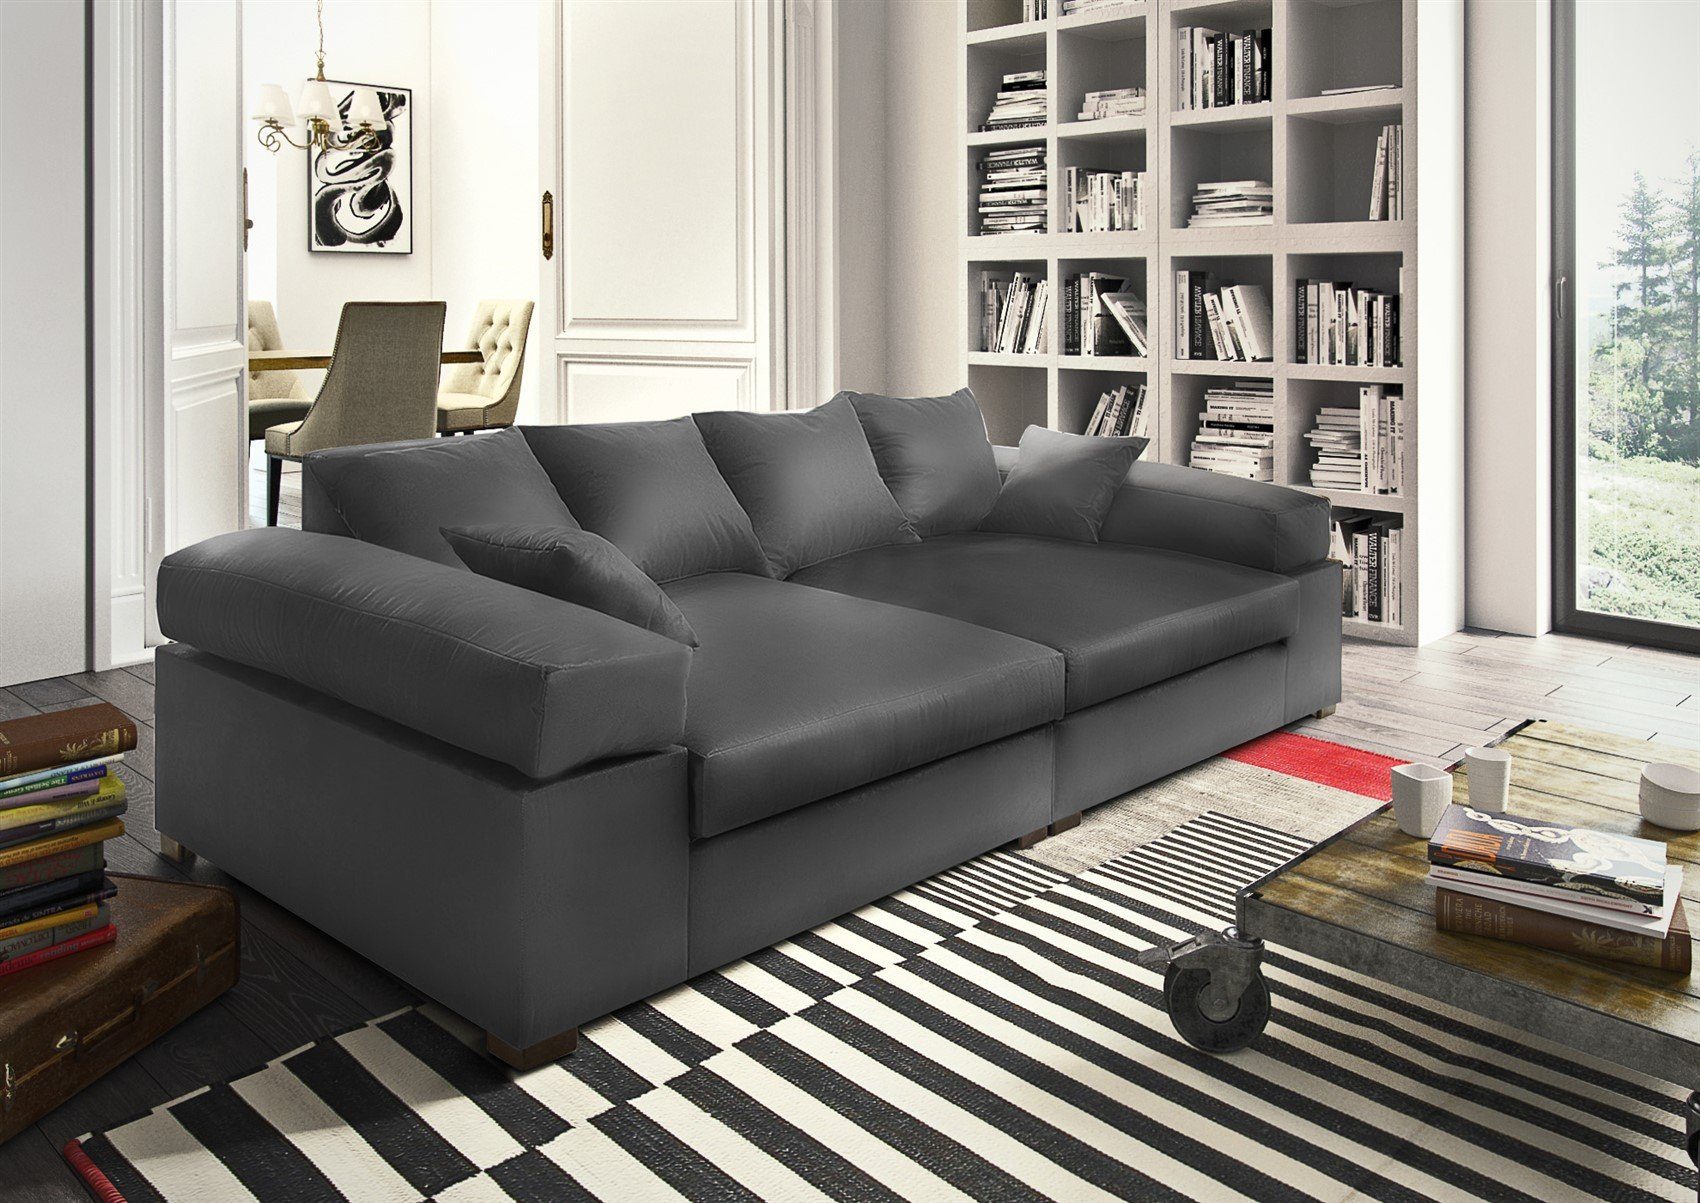 Fun Möbel Big-Sofa Big Sofa Couchgarnitur Megasofa Riesensofa AREZZO, inkl. Zierkissen 1 Teile, Neue Stoffe unter der Artikelnummer: S0V8R0K8OM1P2 | Big Sofas